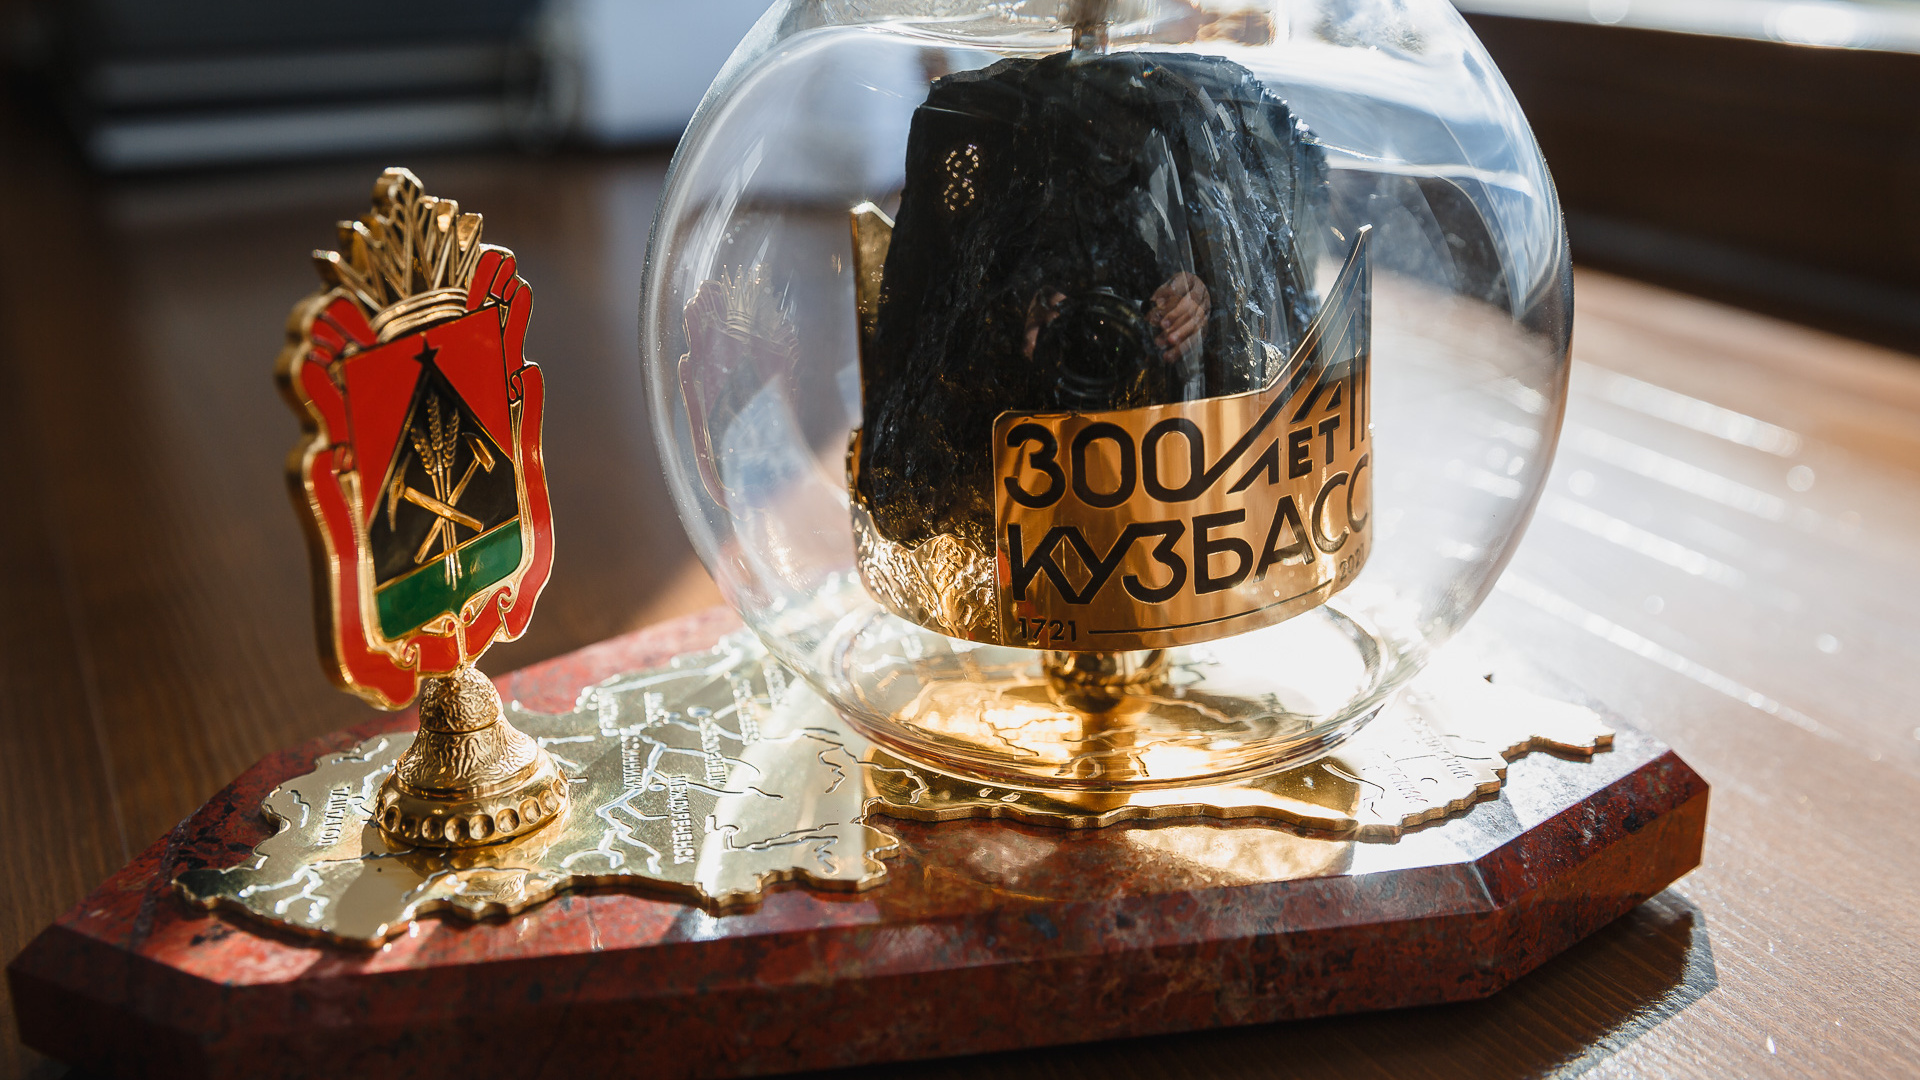 Угольные магниты и крем из торфа: что еще можно привезти в подарок из Кузбасса